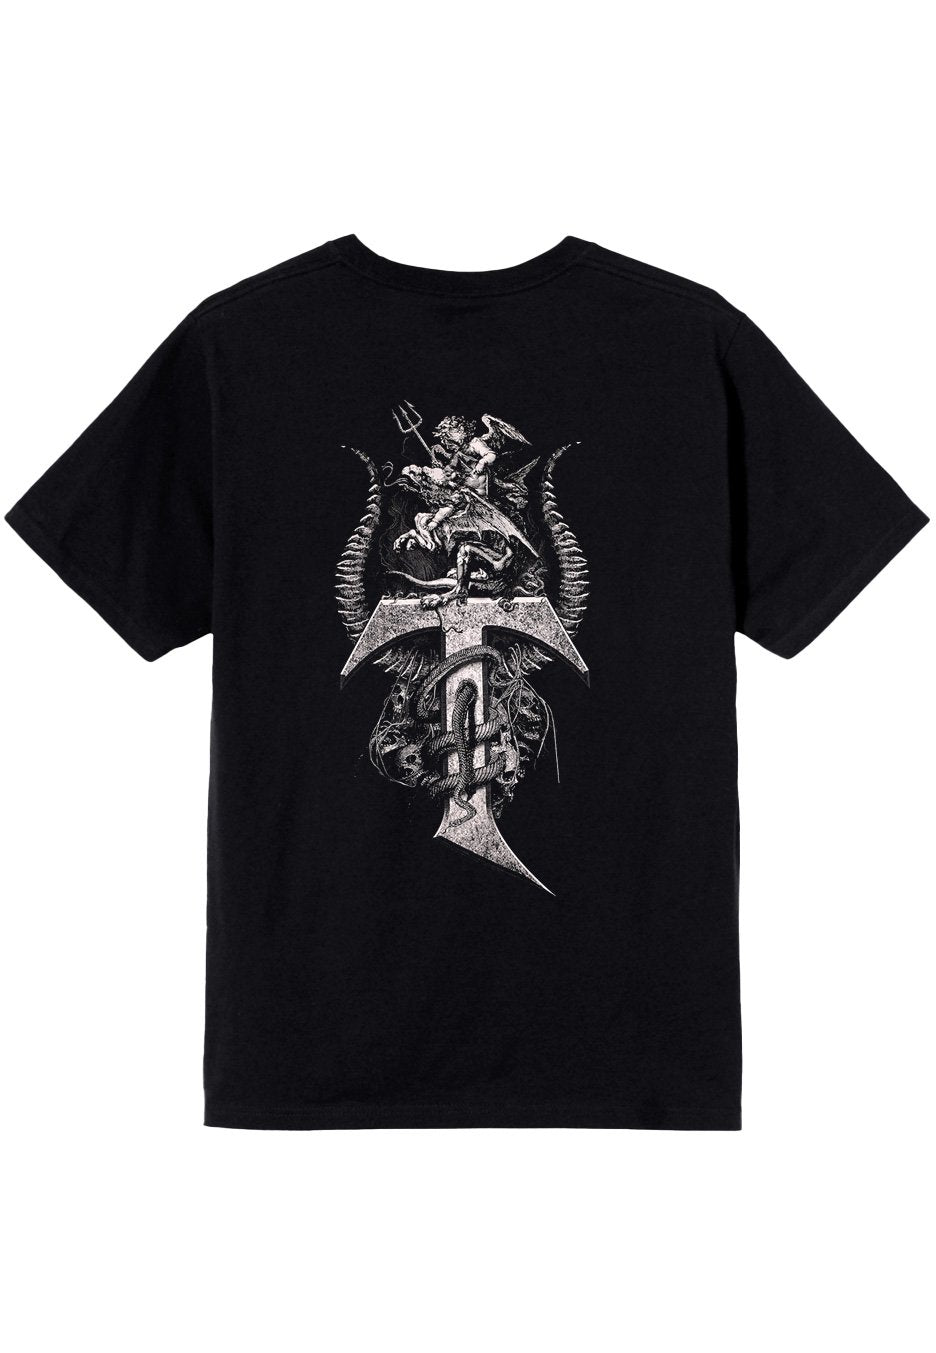 Testament - Pitchfork Horns - T-Shirt